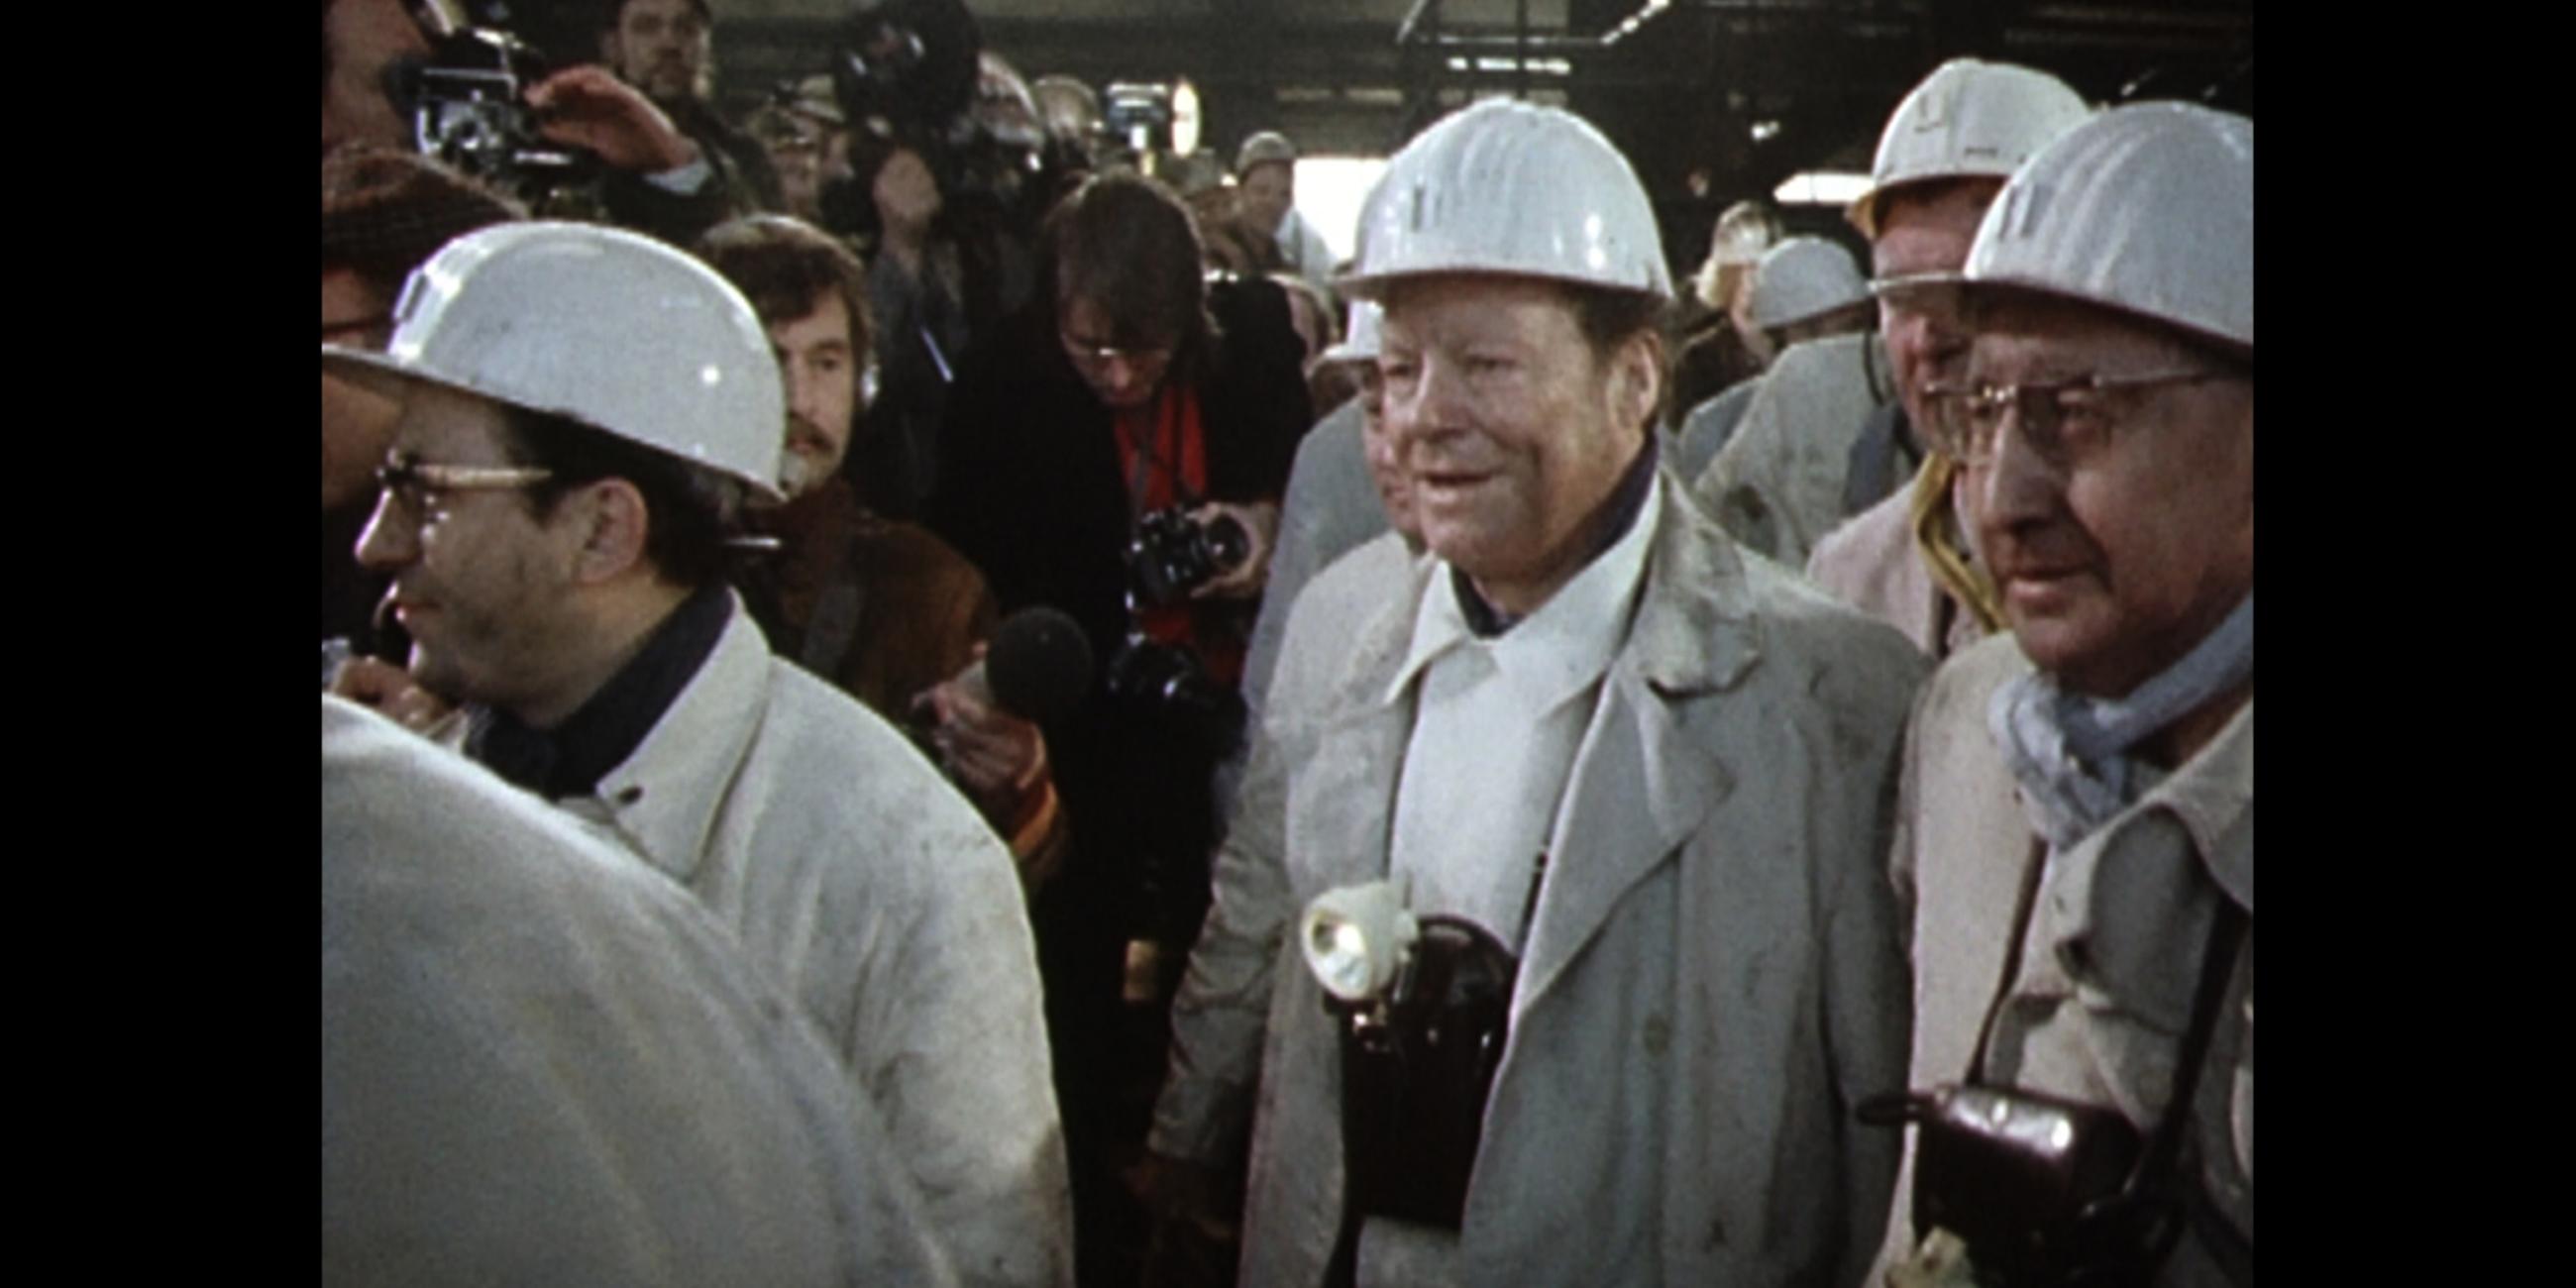 Willy Brandt im Schutzkittel umringt von Bergarbeitern mit Helmen und Journalisten im Hintergrund. 